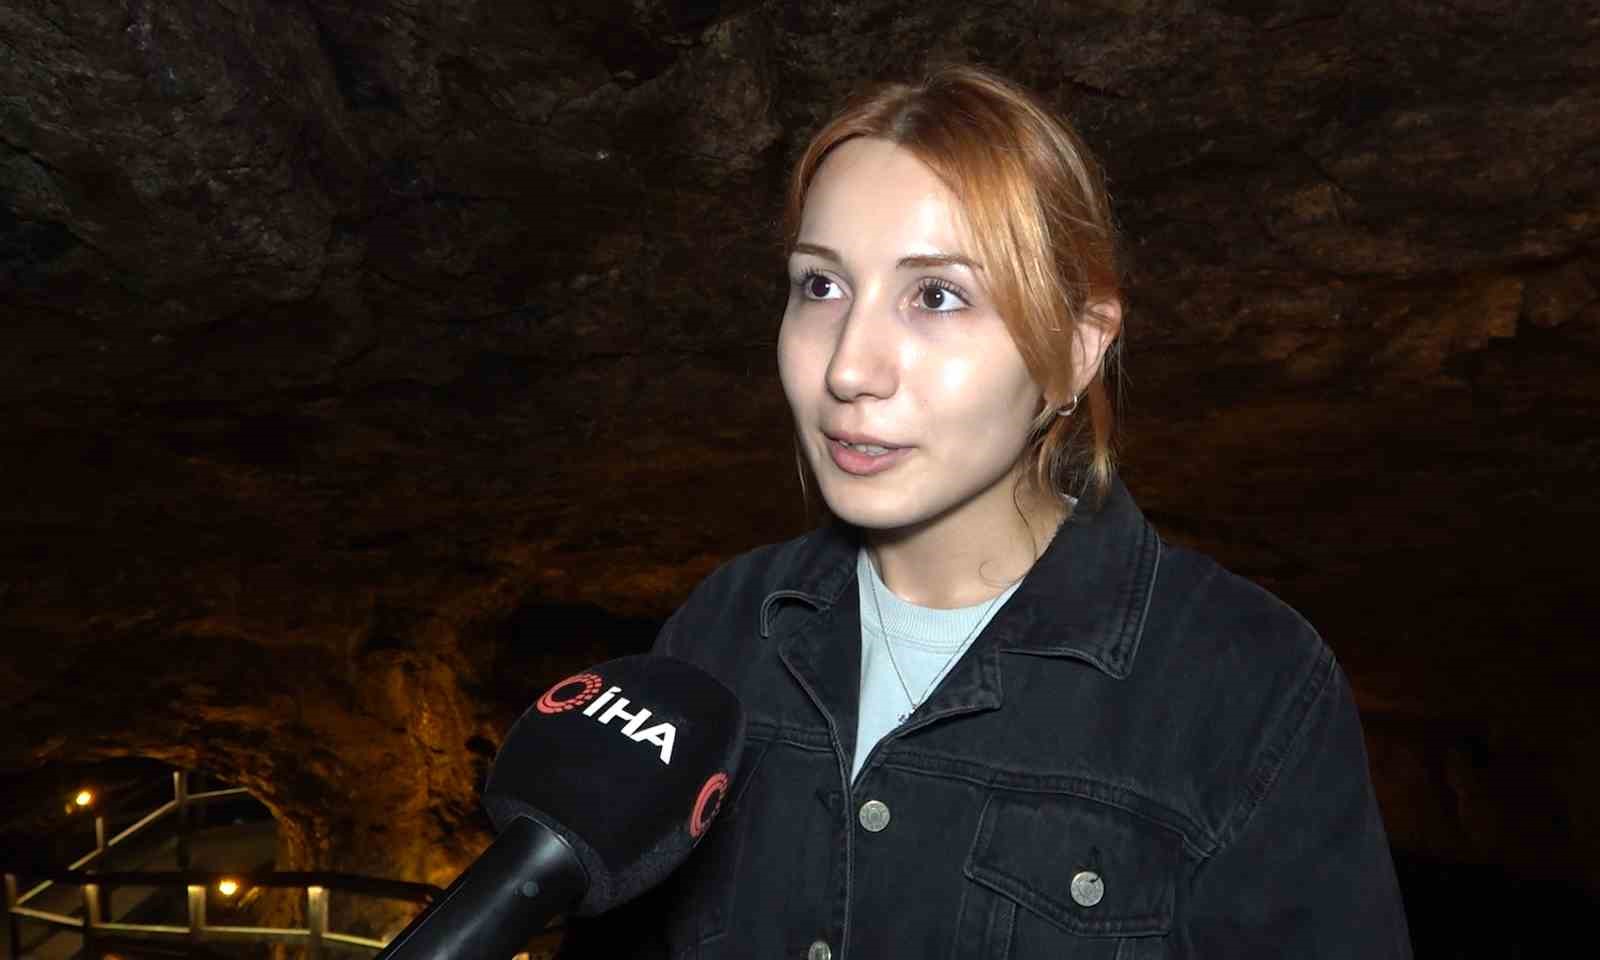 285 metre uzunluğunda 3 kattan oluşuyor: Tarihi Sulu Mağara ziyaretçilerini ağırlıyor